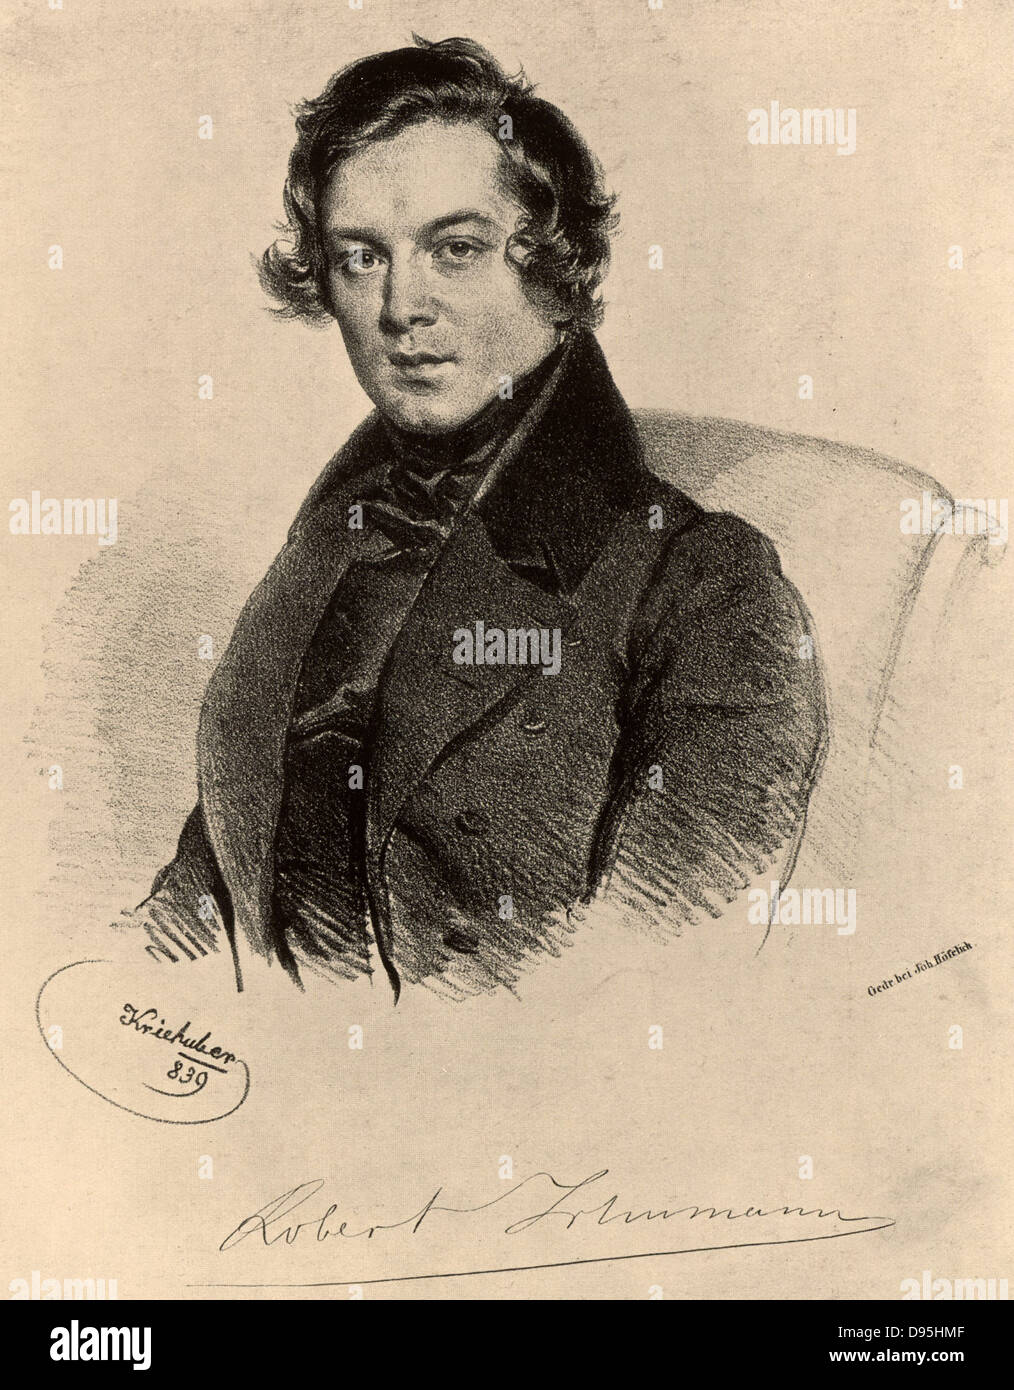 Deutschen romantischen Komponisten Robert Schumann (1810-1856). Lithographie. Stockfoto